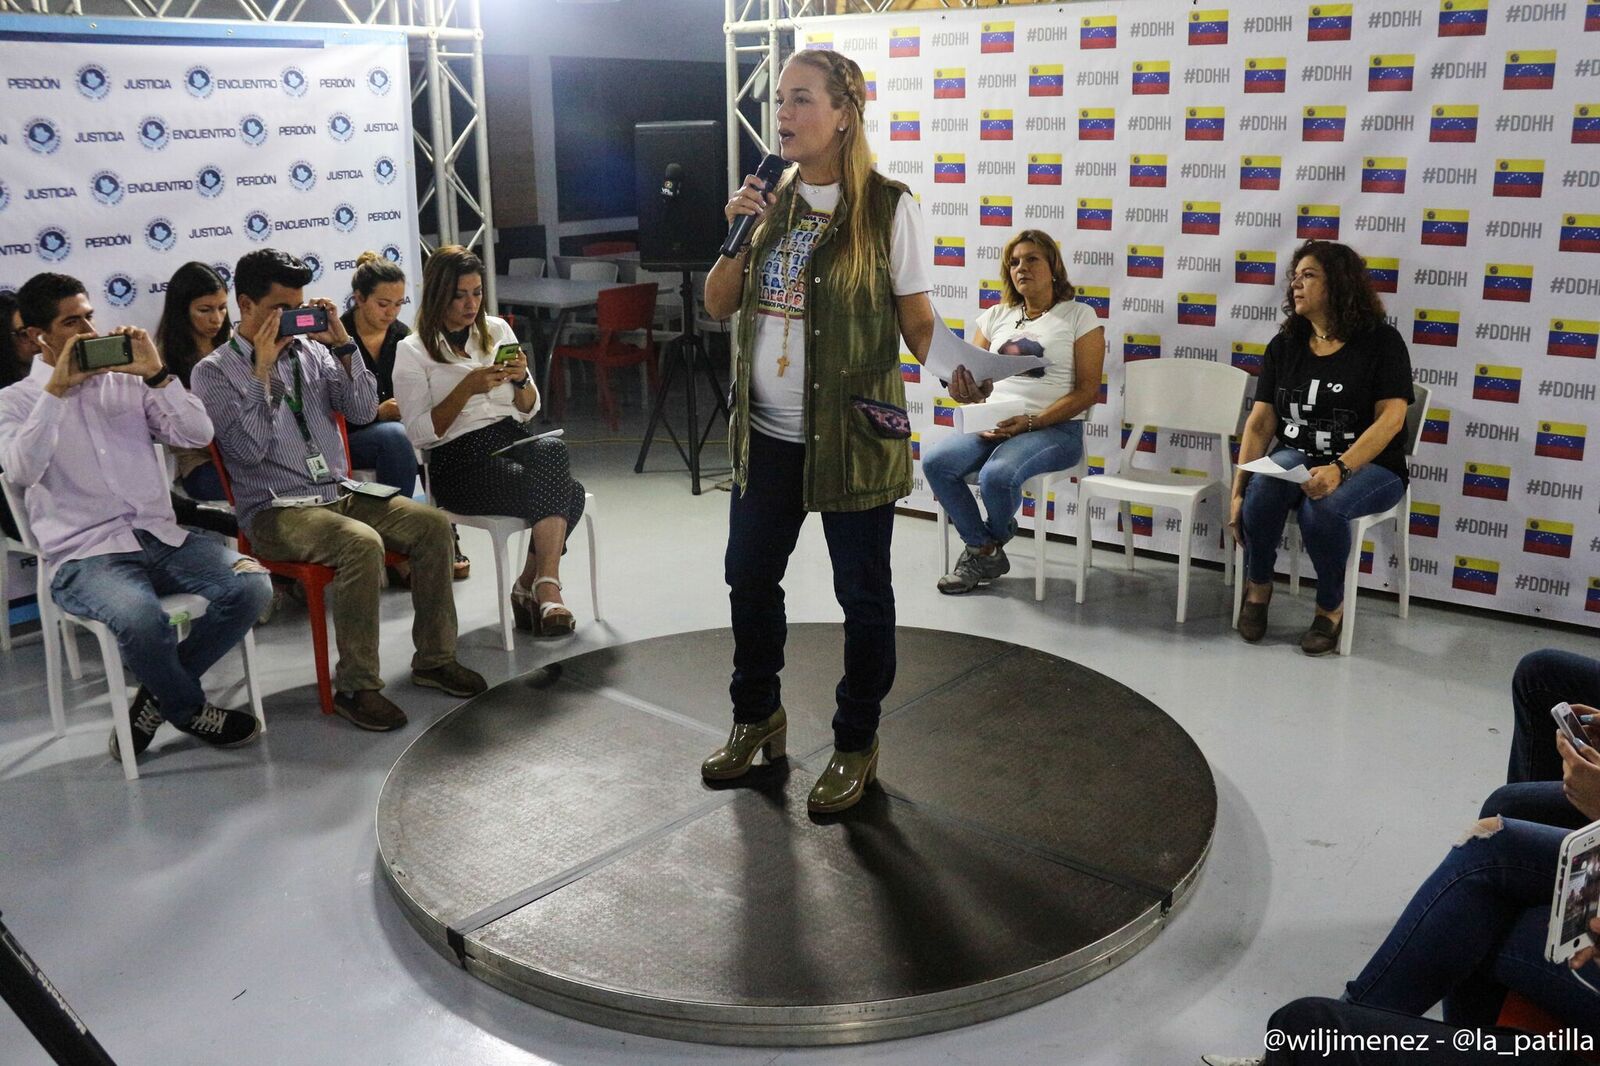 Lilian Tintori lanzó plataforma “Ángeles por la libertad” en apoyo a los presos políticos